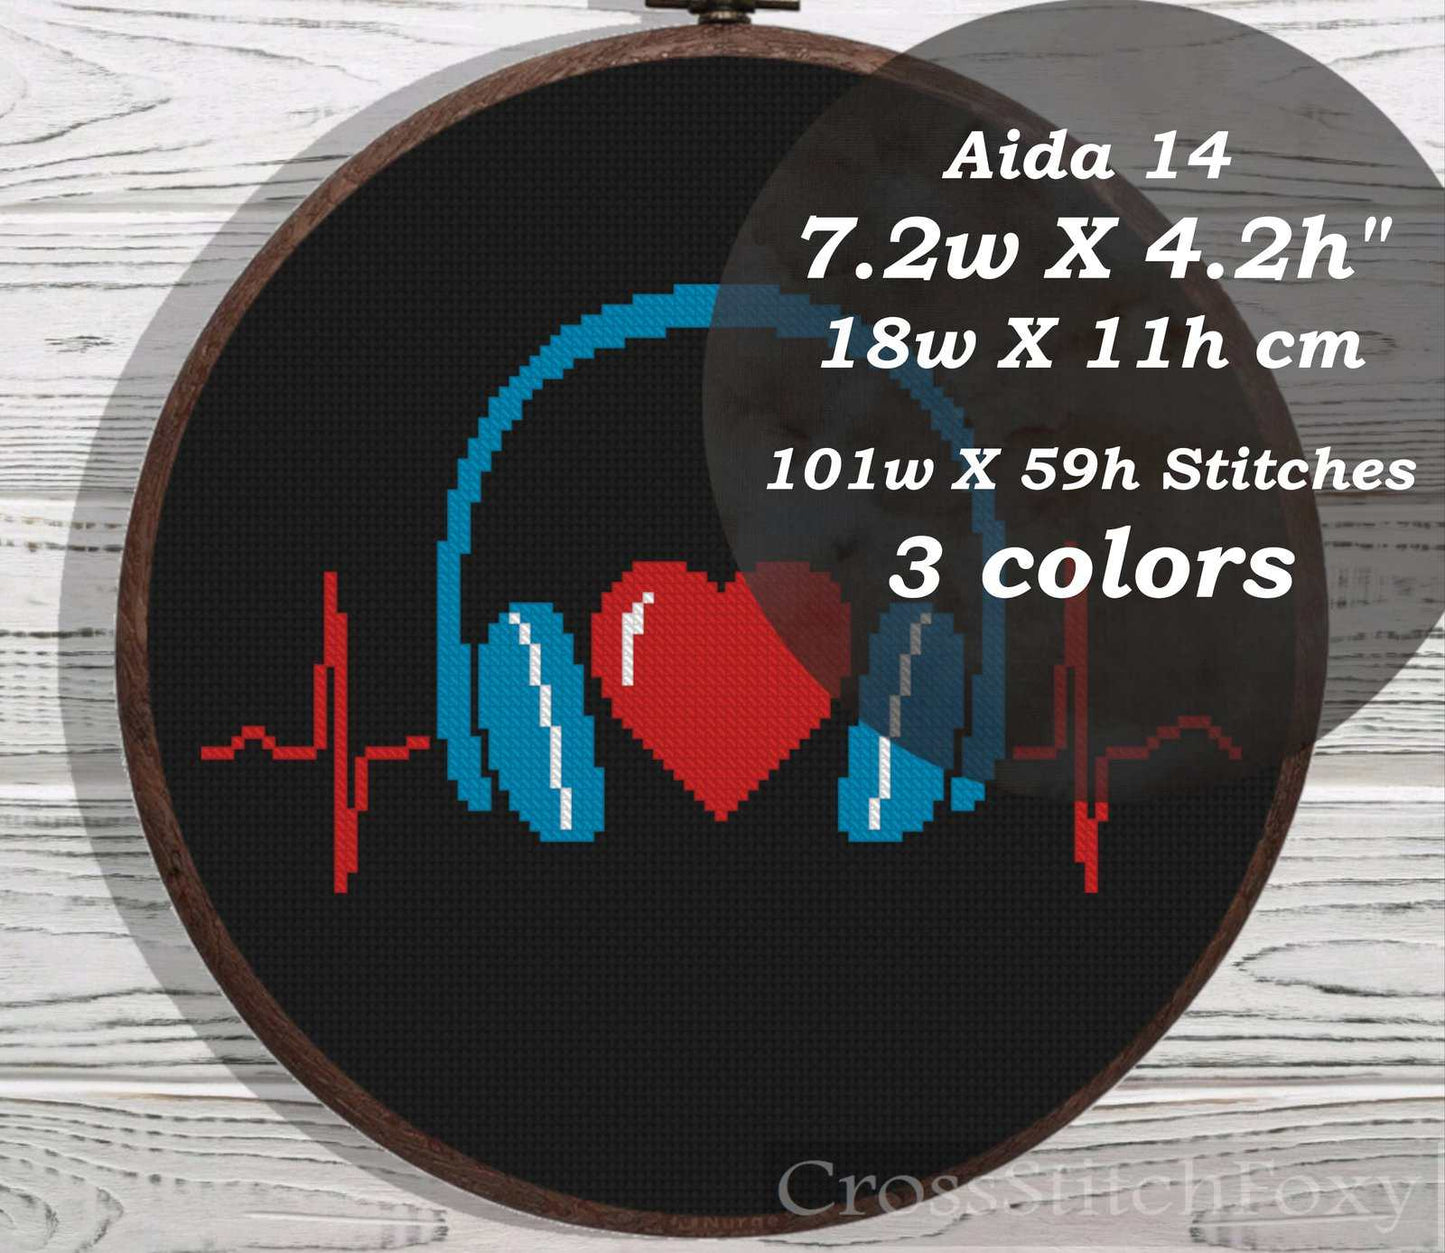 Music heart cross stitch pattern